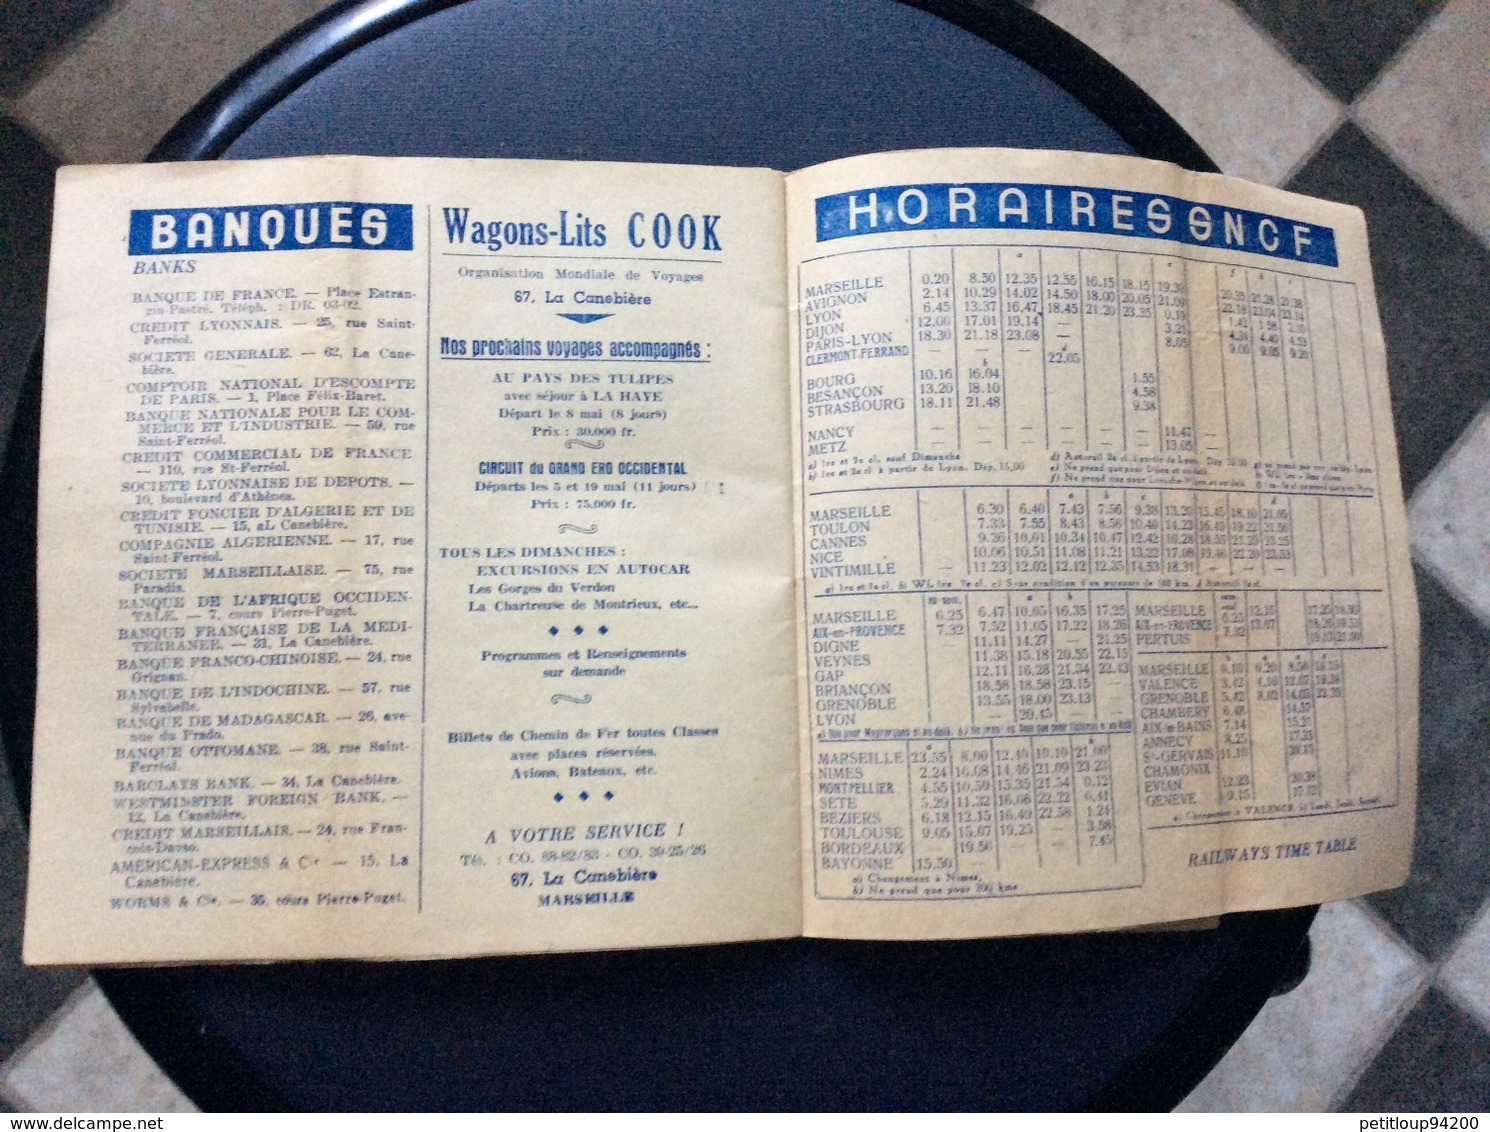 QUINZE JOURS À MARSEILLE Bars Cabarets Restaurants Cinémas Spectacles Sports Clubs Lignes Aériennes SNCF Banques MAI1949